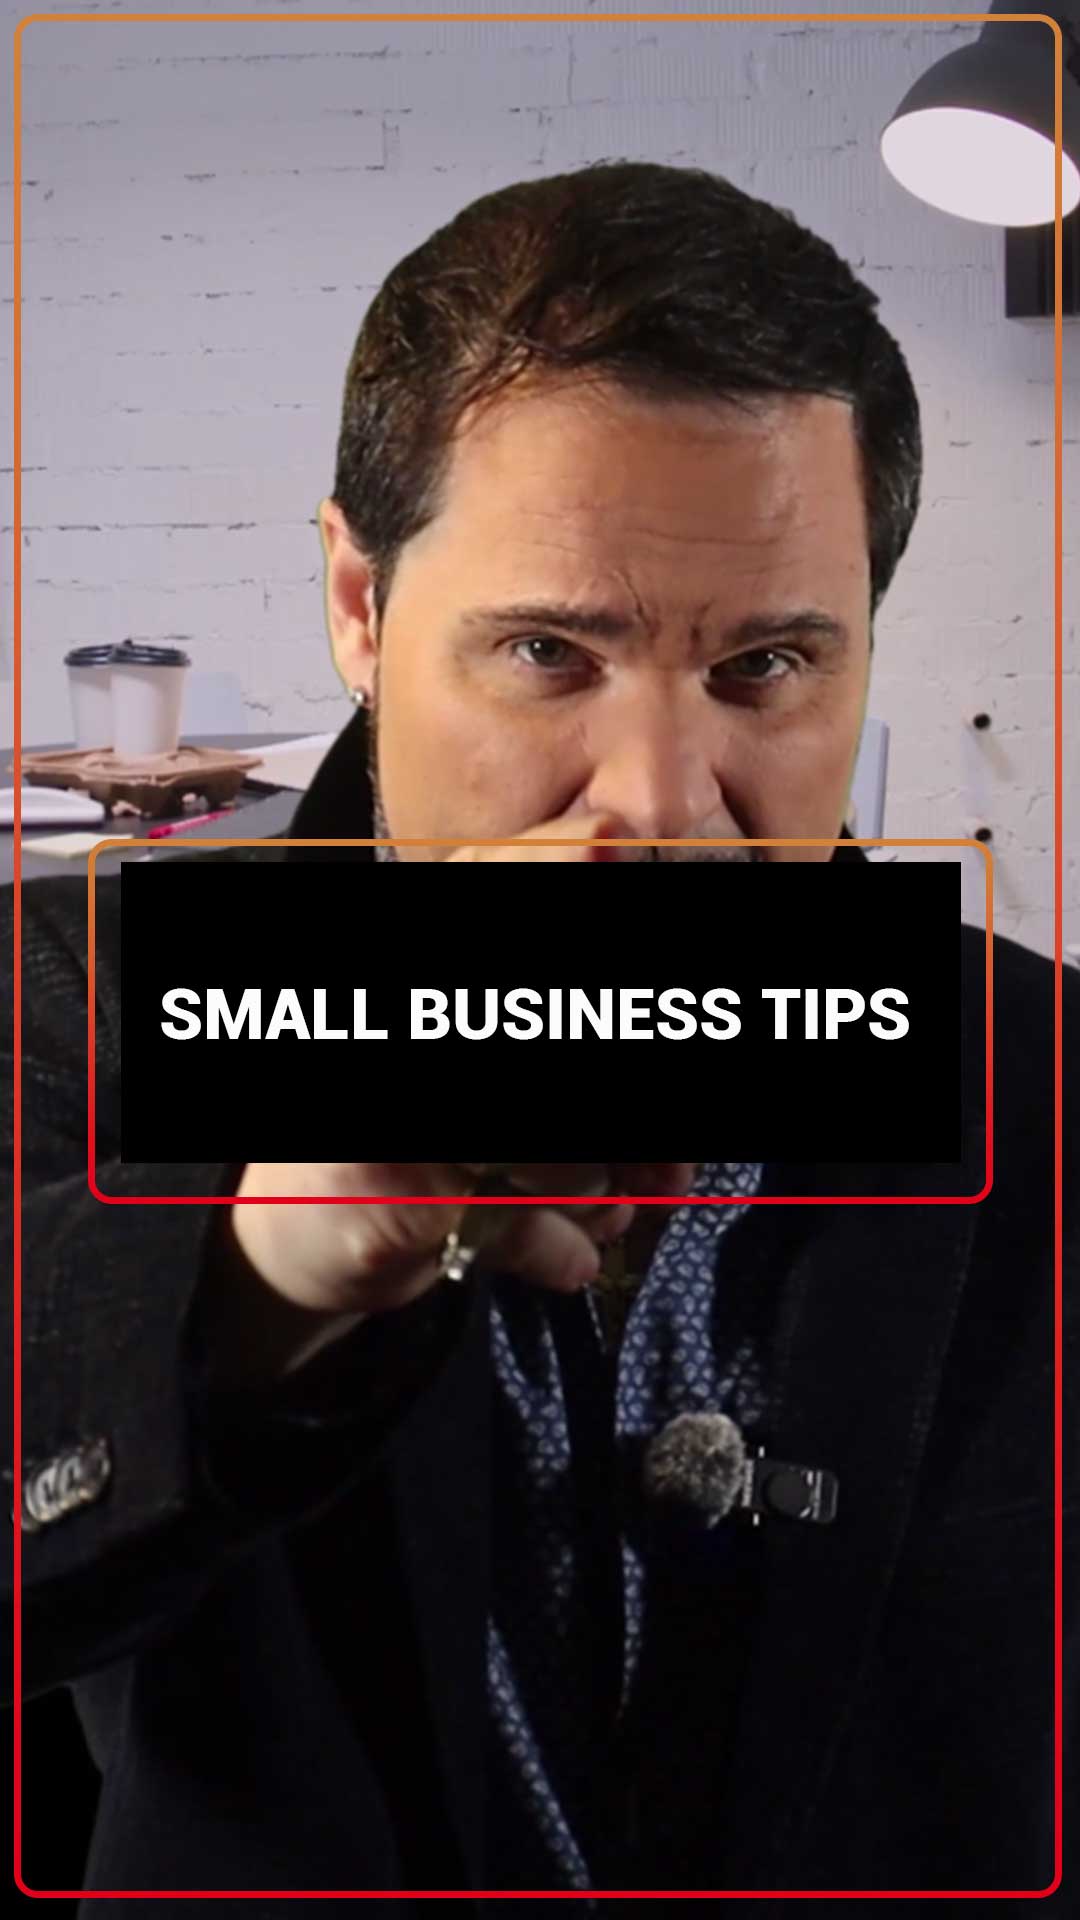 Советы для малого бизнеса, которые нужно знать, чтобы начать работу!